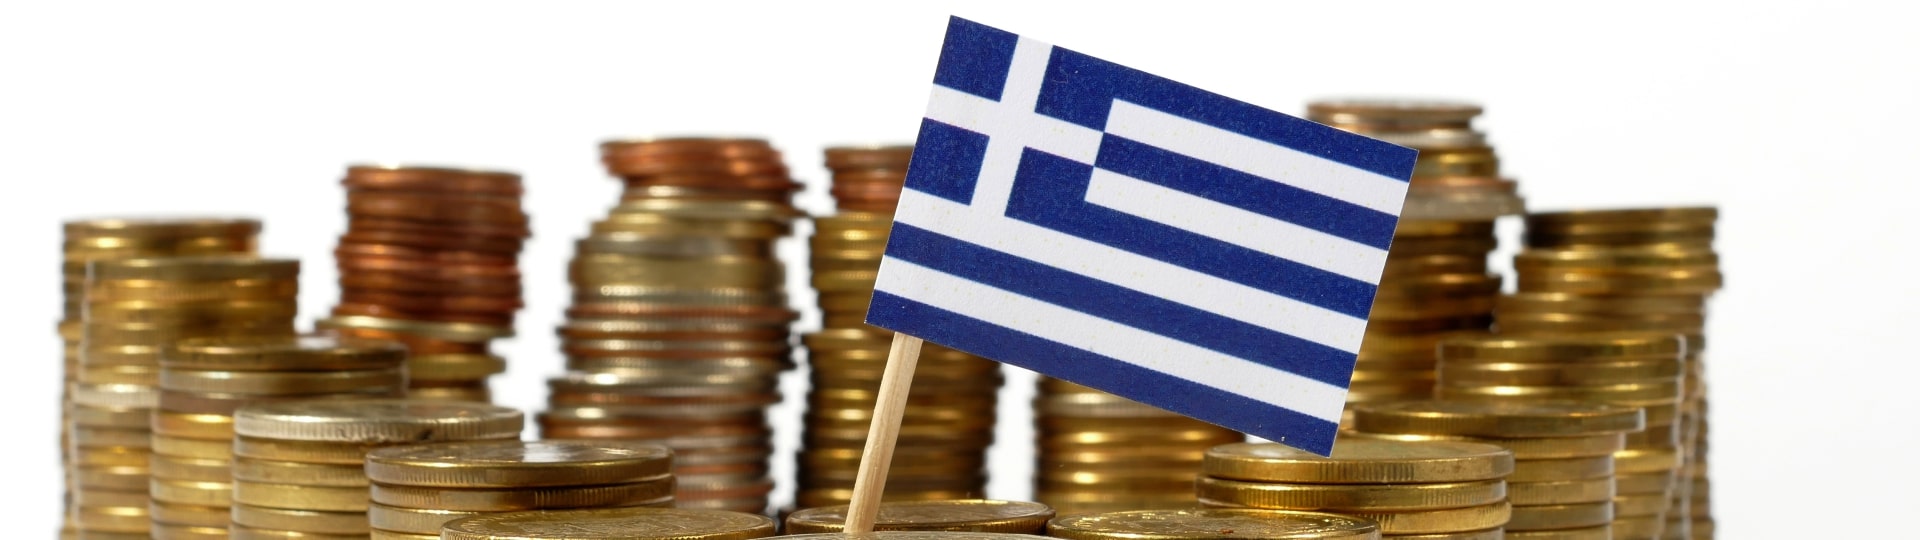 Řecku pomůže vyšší rating. Stále však trpí vážnými problémy